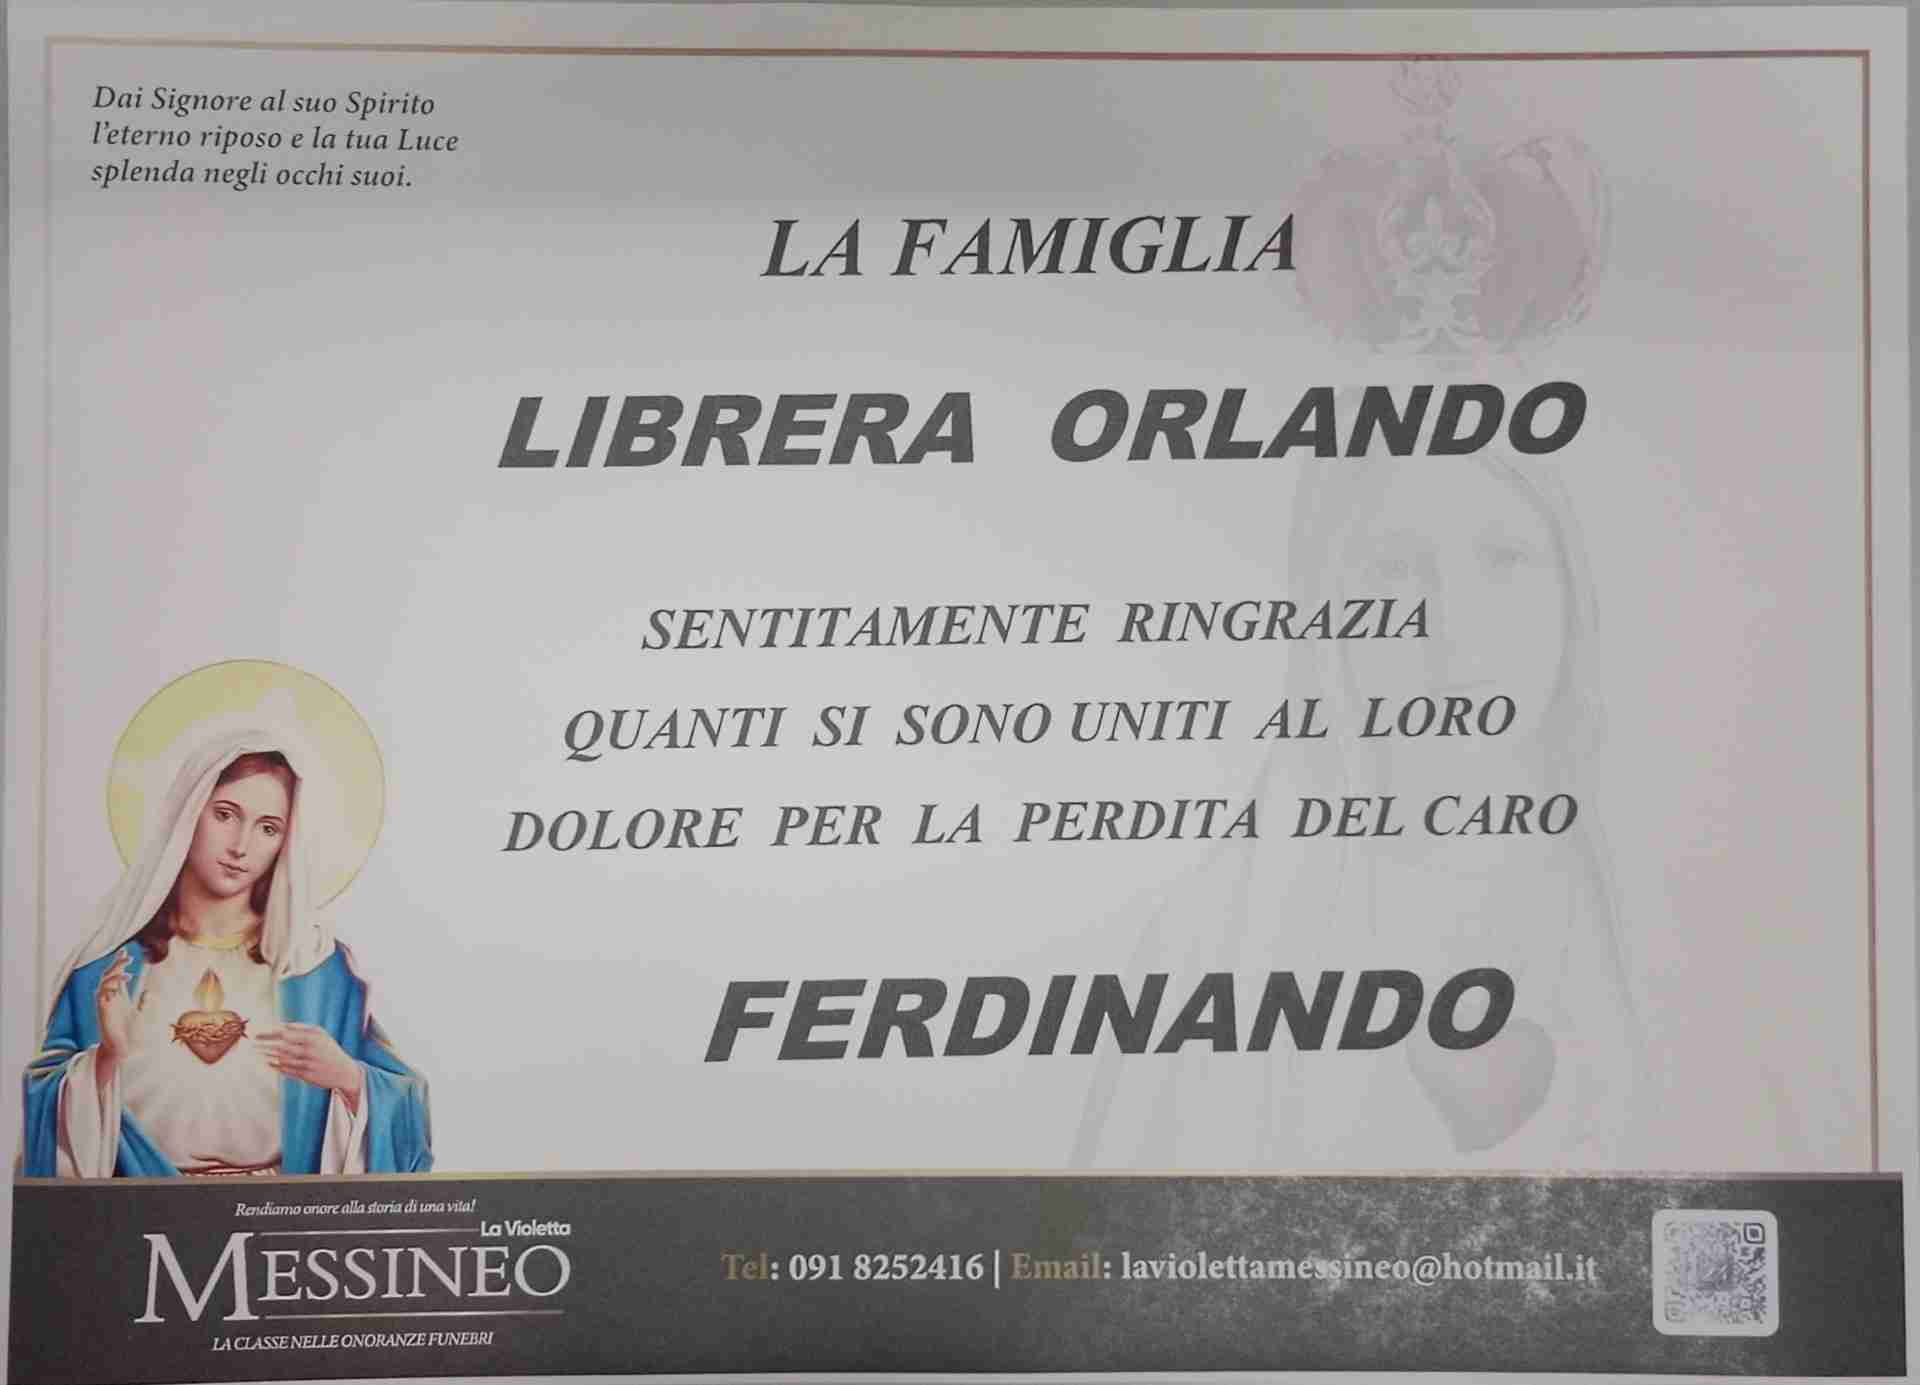 Ferdinando Librera